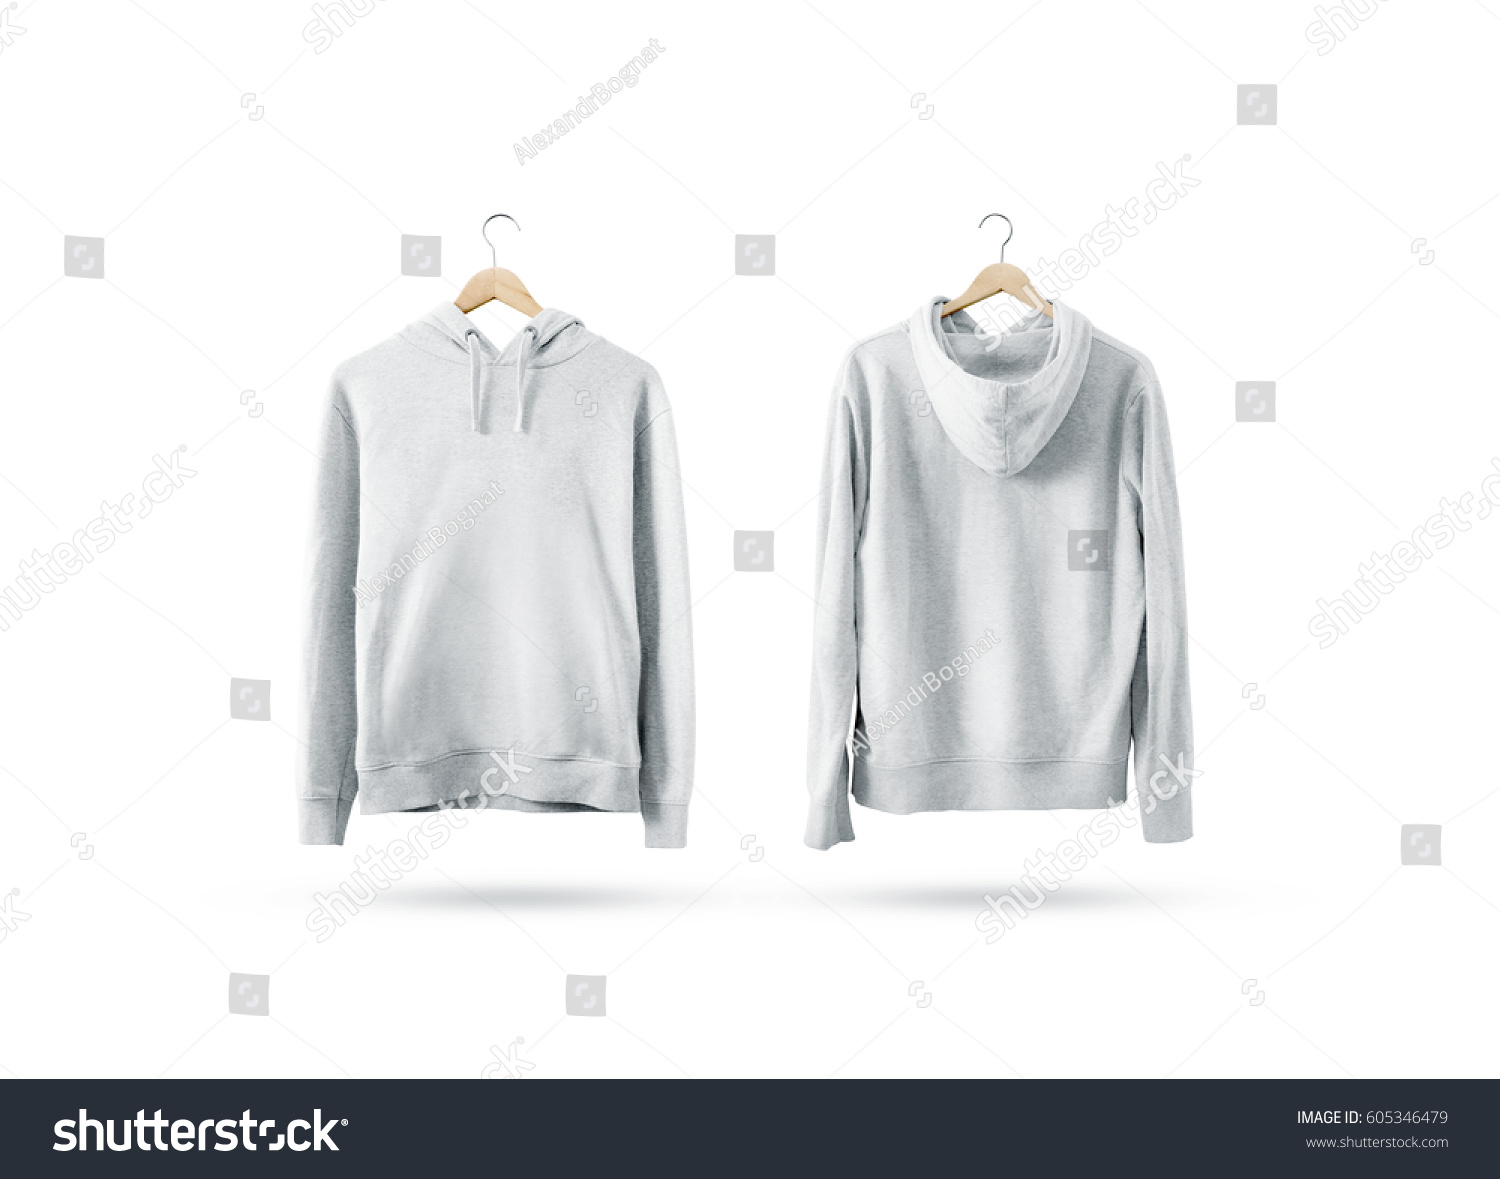 Download Blank White Sweatshirt Mockup Set Hanging Stock Photo ...